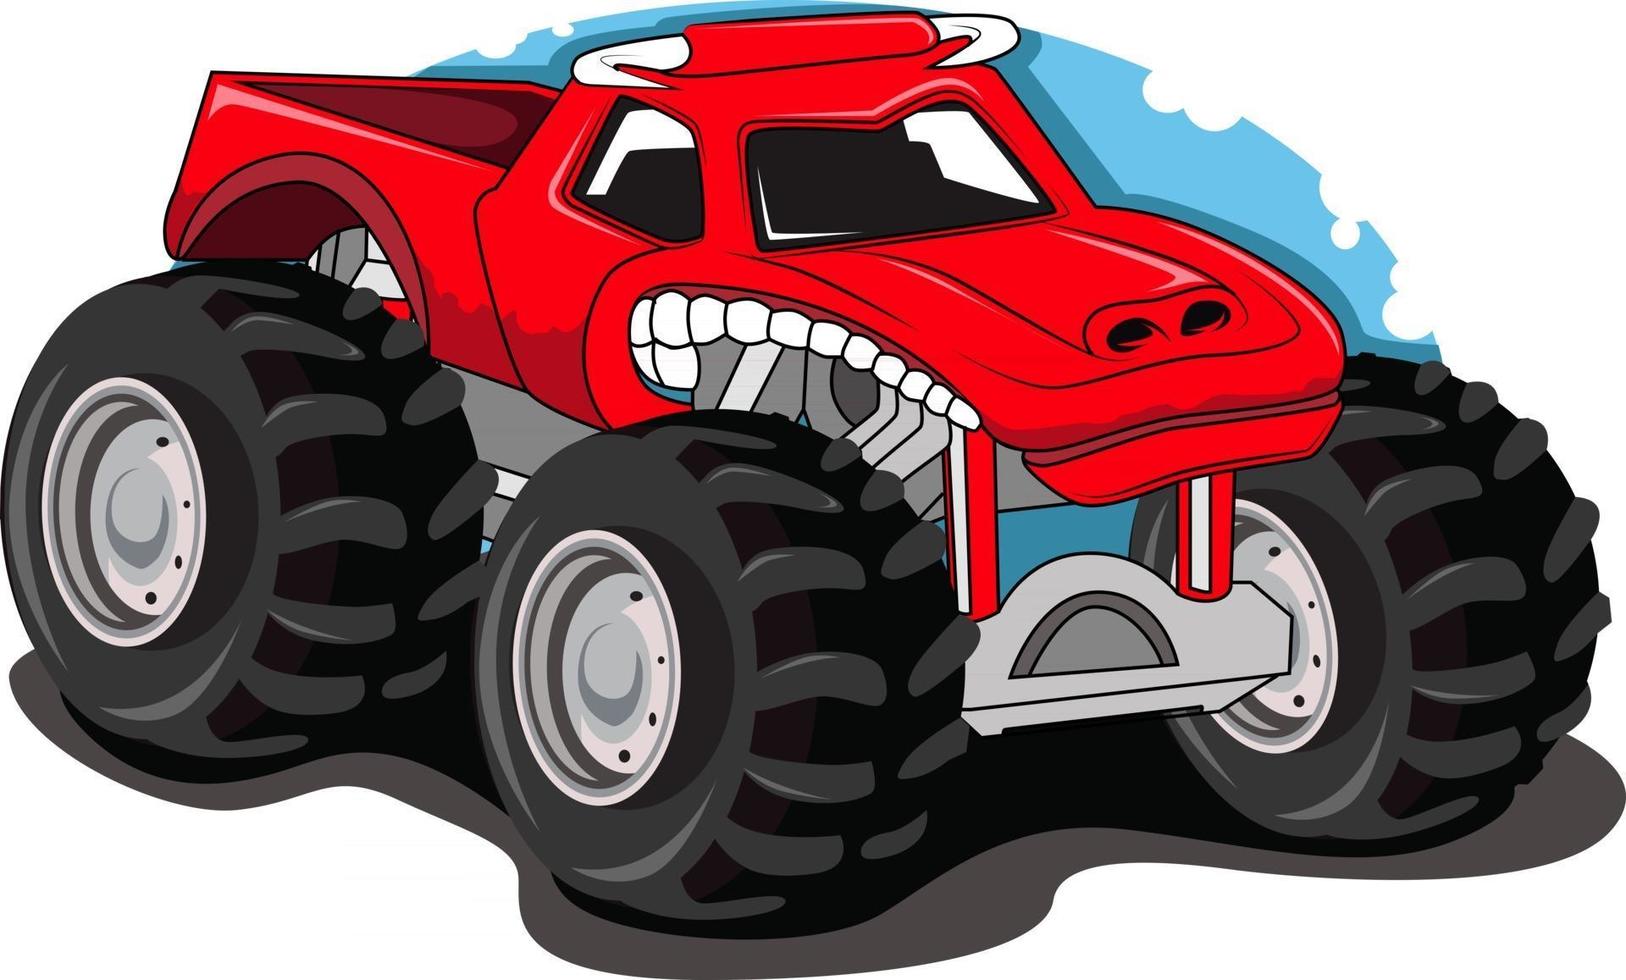 monster truck off road illustration vector